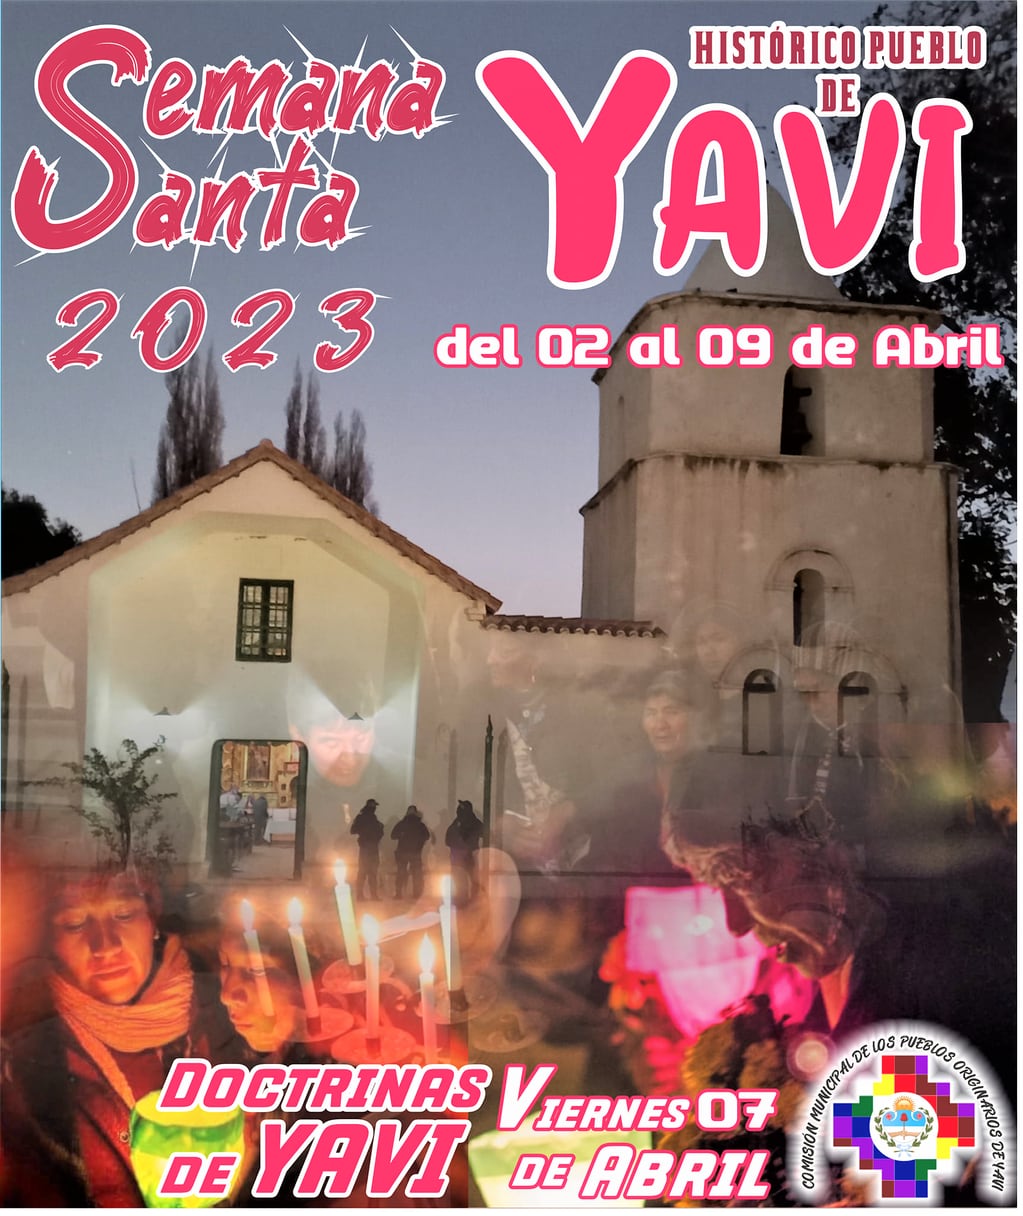 Pieza gráfica que promociona el turismo religioso para la Semana Santa en Yavi, Jujuy.